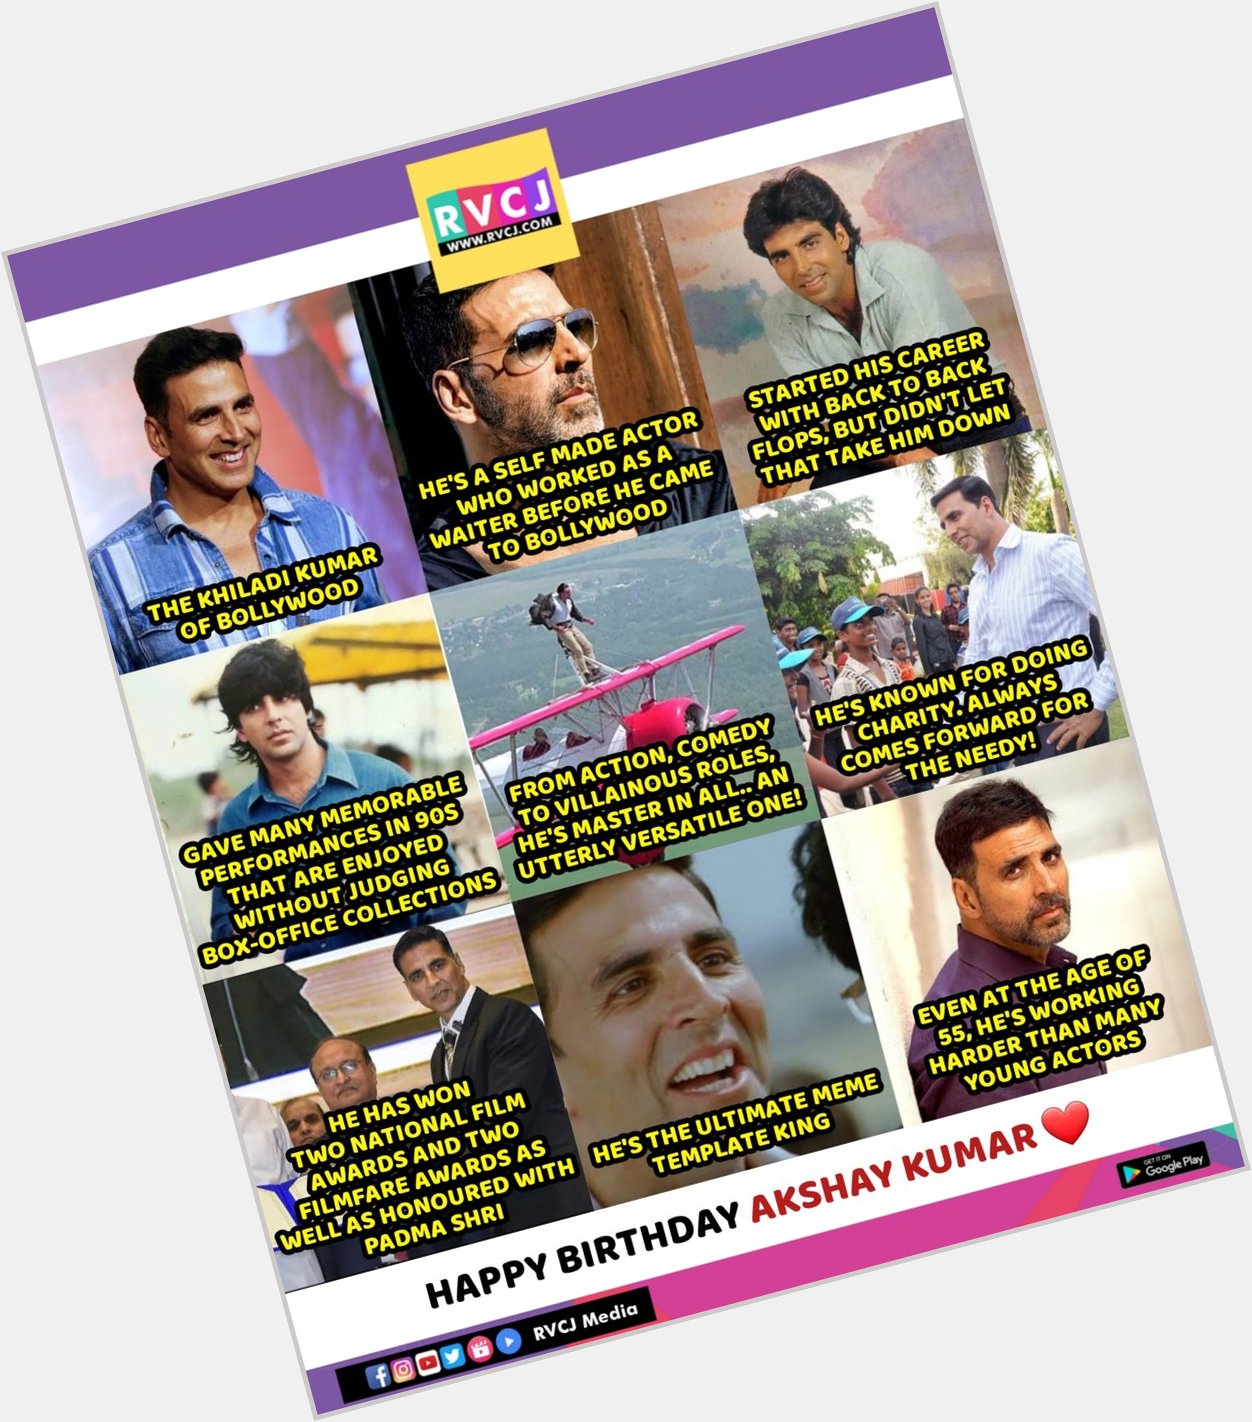 Happy Birthday Akshay Kumar!    